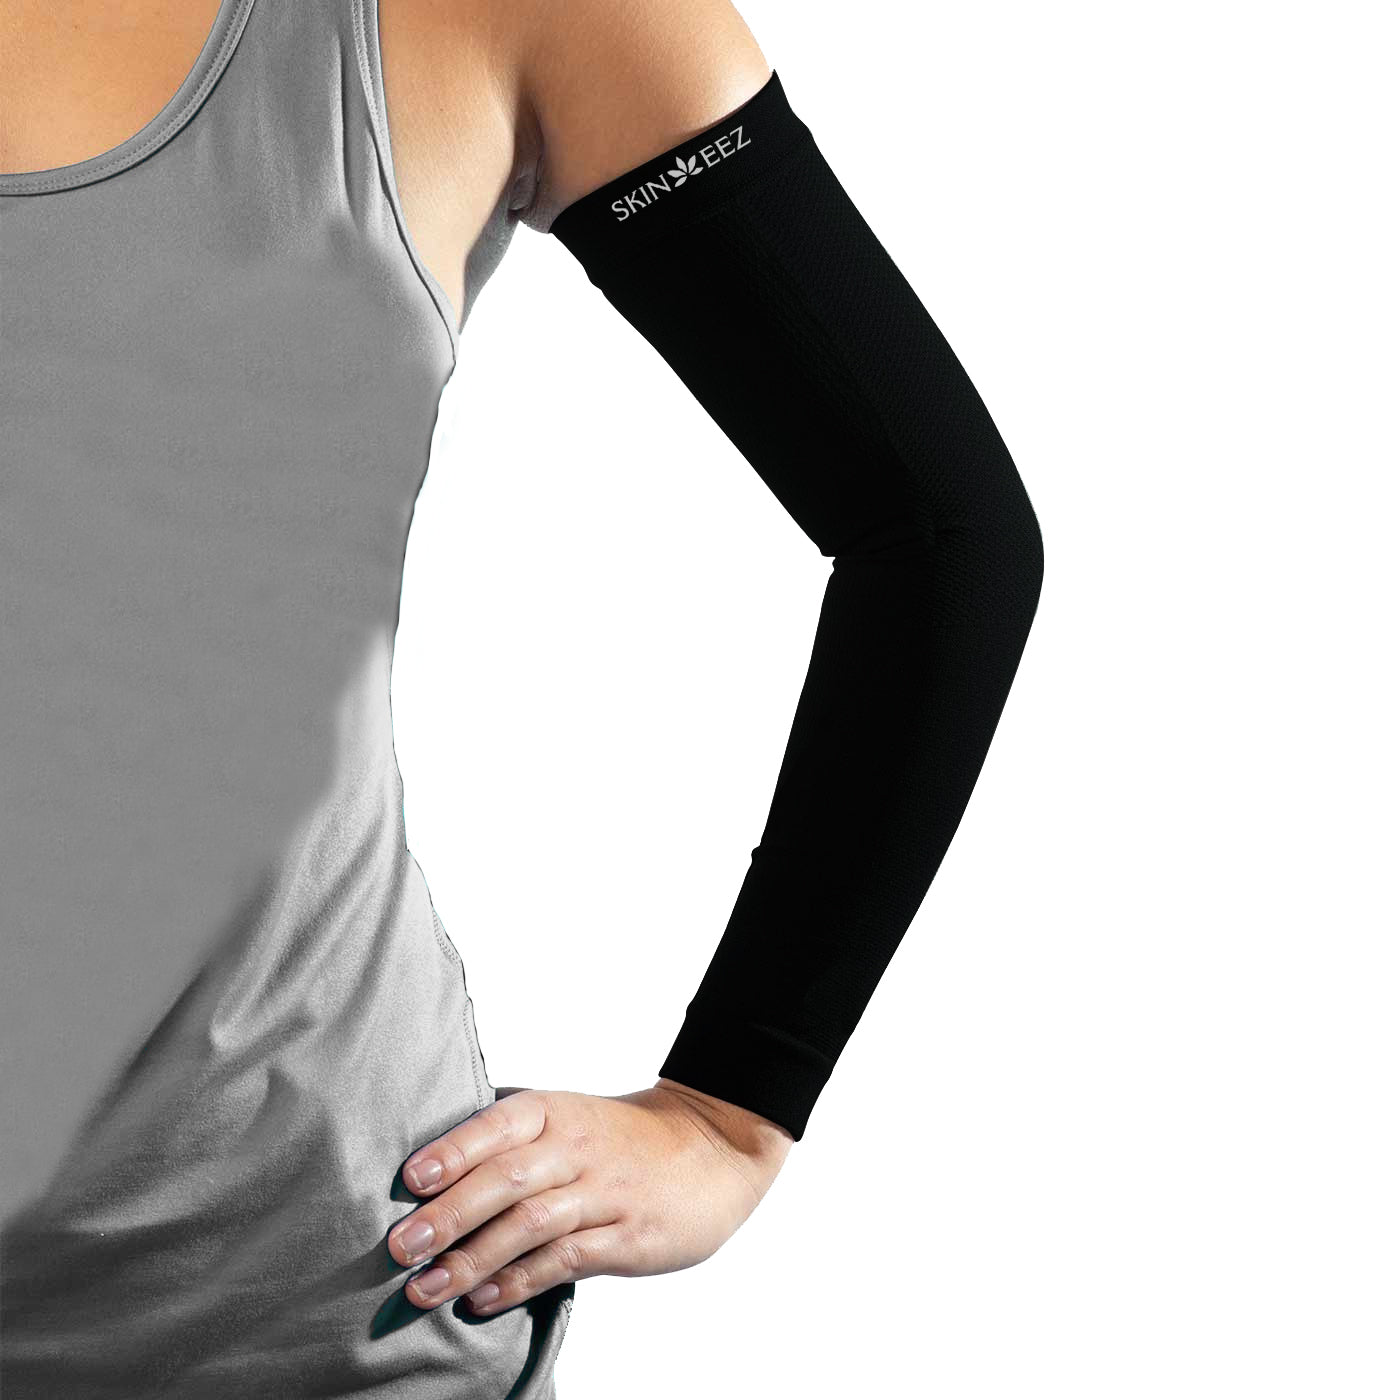 Medline Mild Compression Protective Arm Sleeve - Shop All